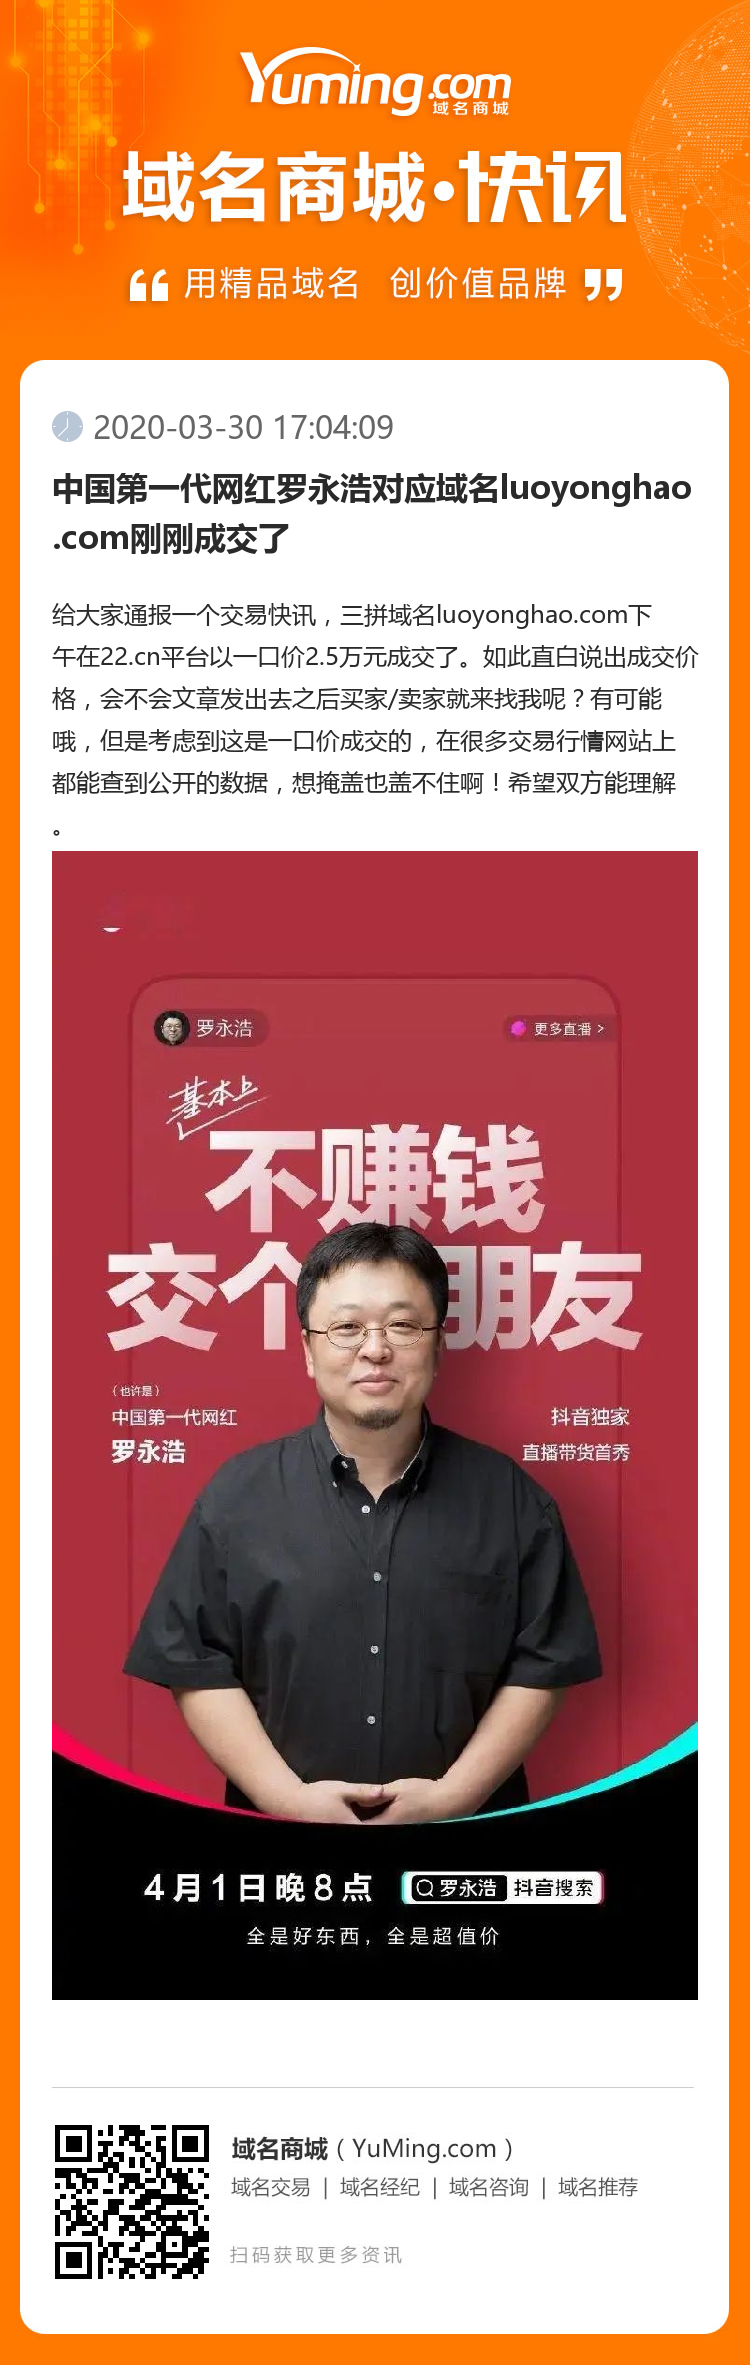 中国第一代网红罗永浩对应域名luoyonghao.com刚刚成交了